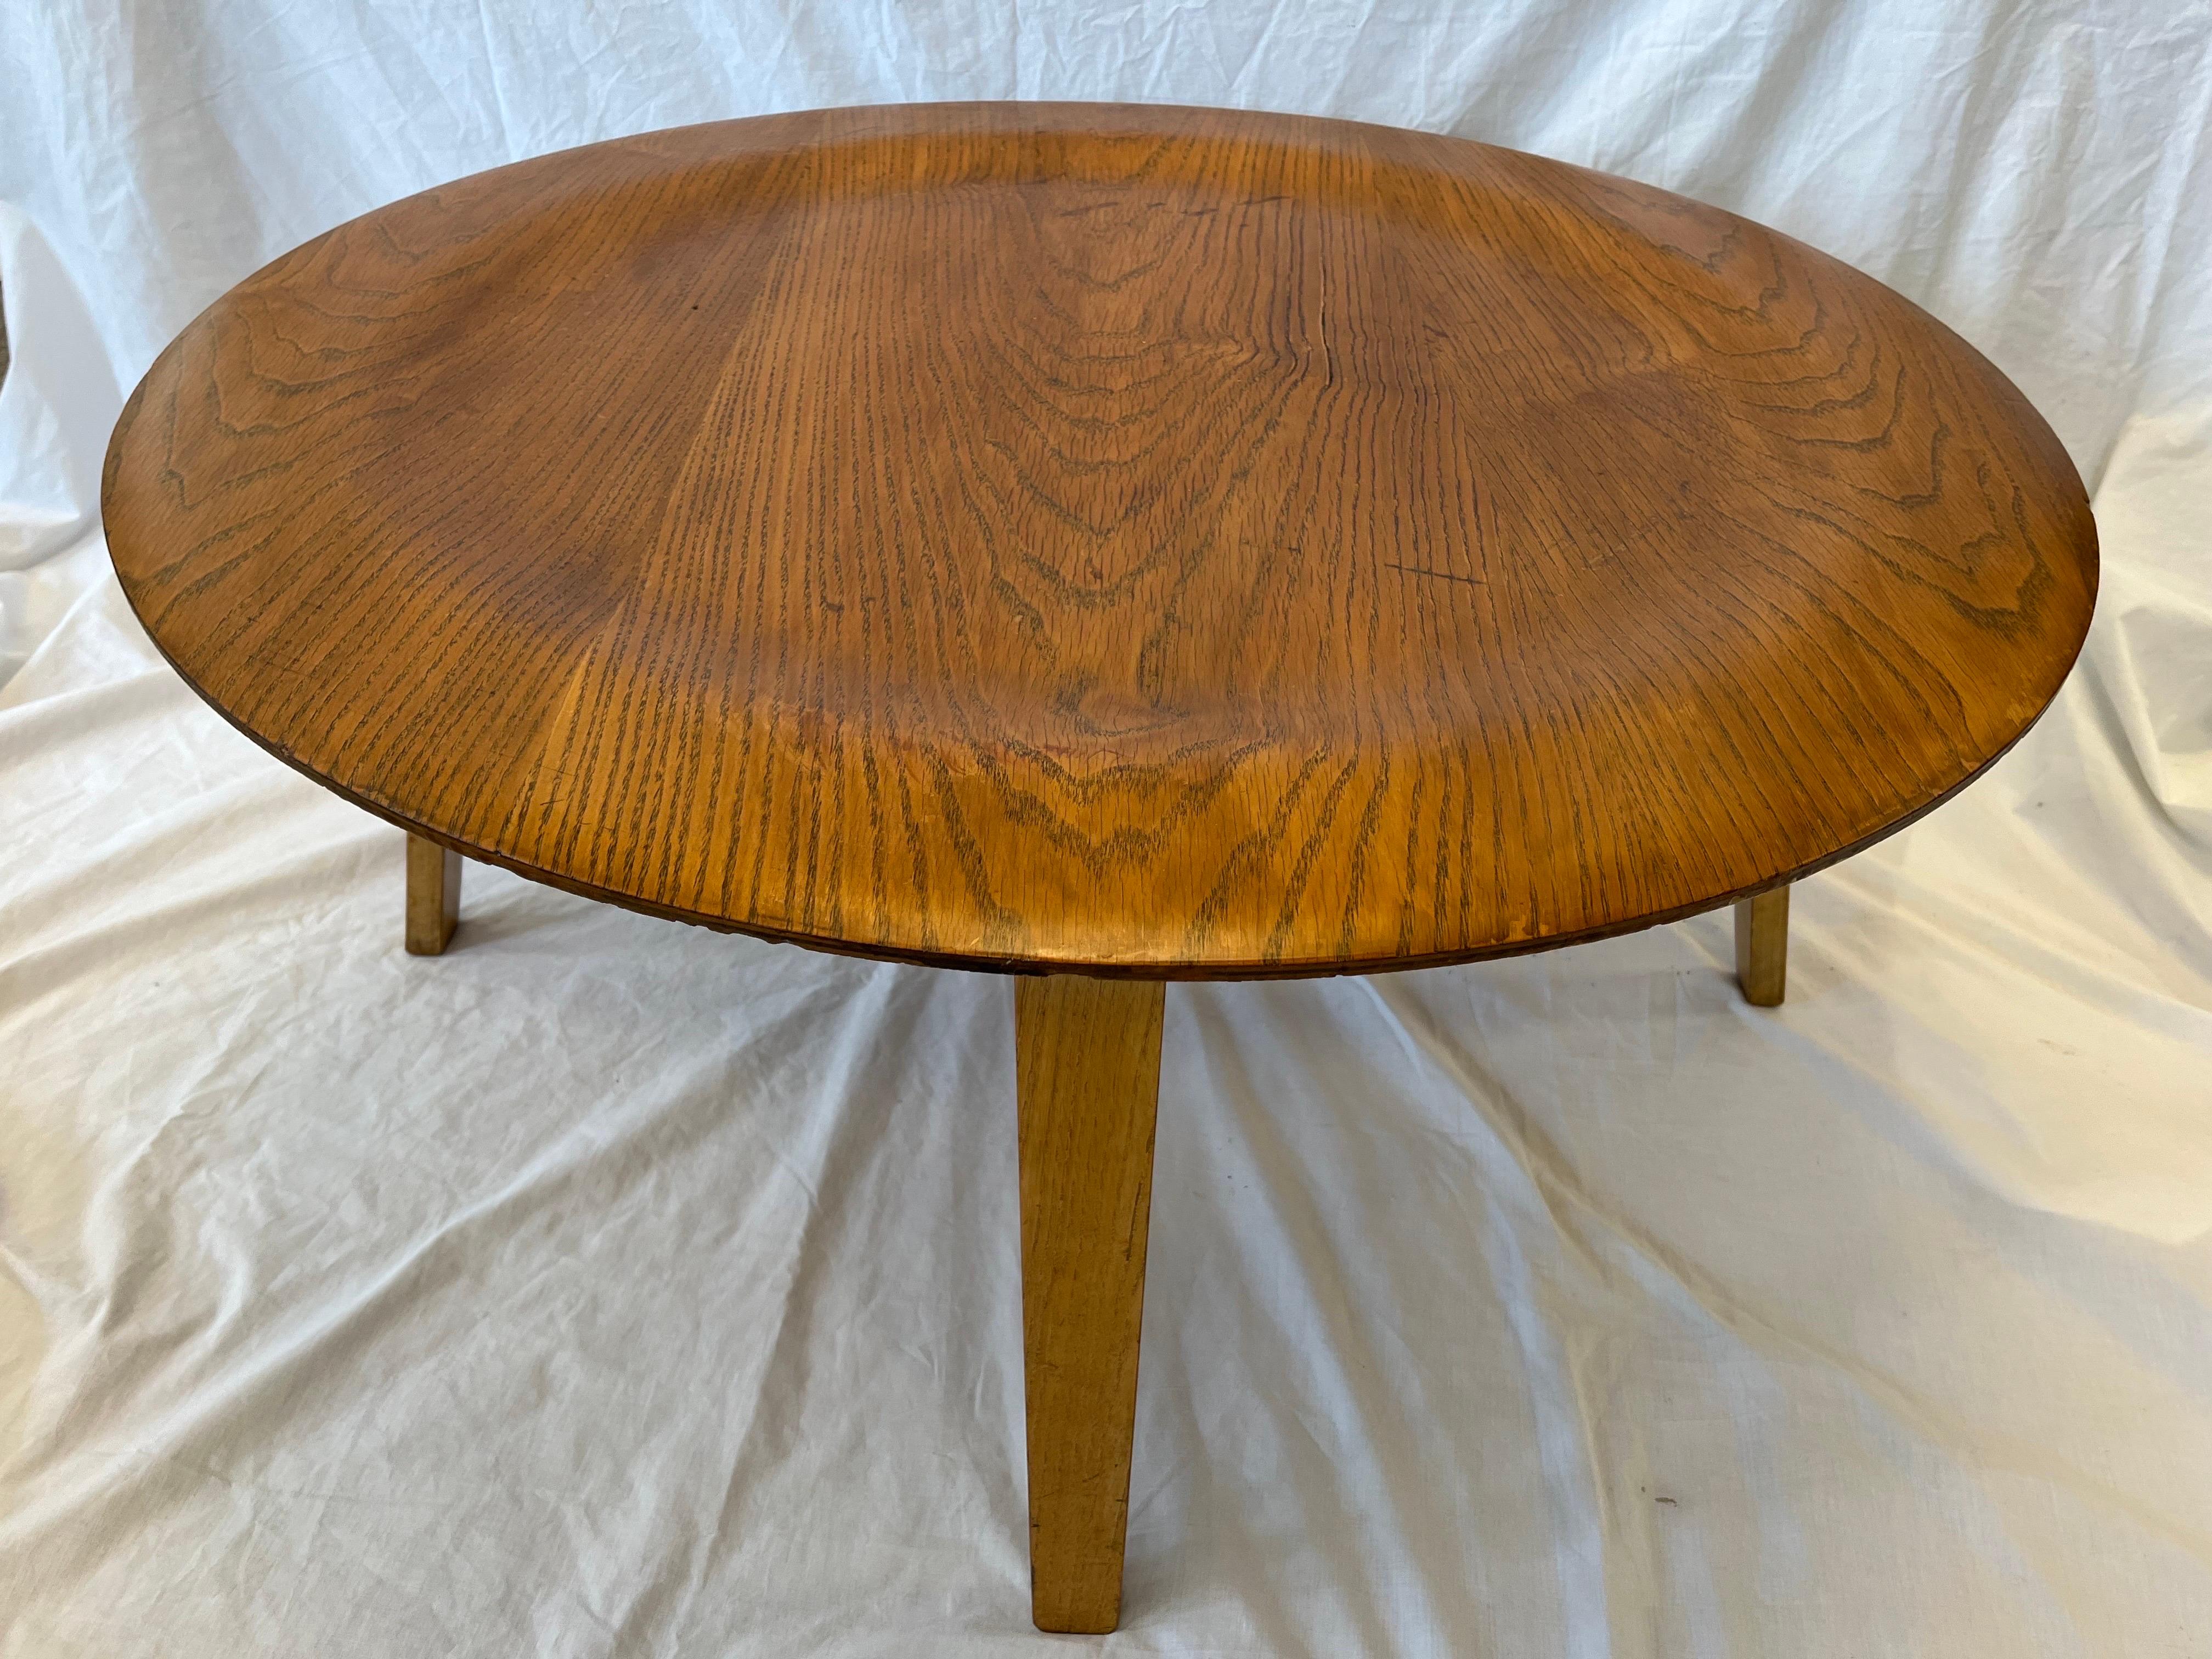 20ième siècle Table basse en contreplaqué moulé Charles Eames CTW Circa 1950's Label Verso